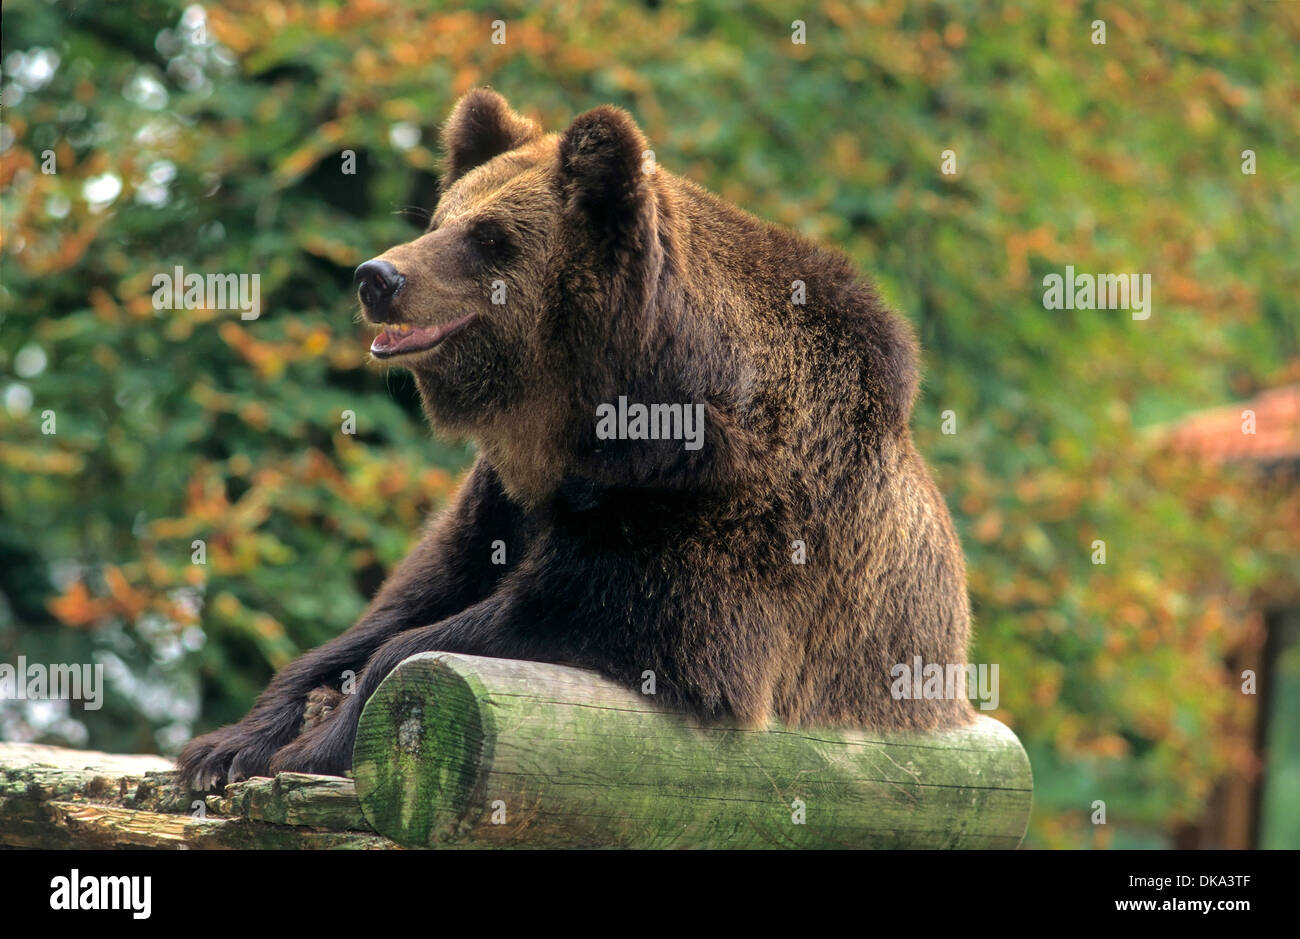 Zoo: Braunbär, Braunbär (Ursus arctos), brown bear (Ursus arctos) Stock Photo